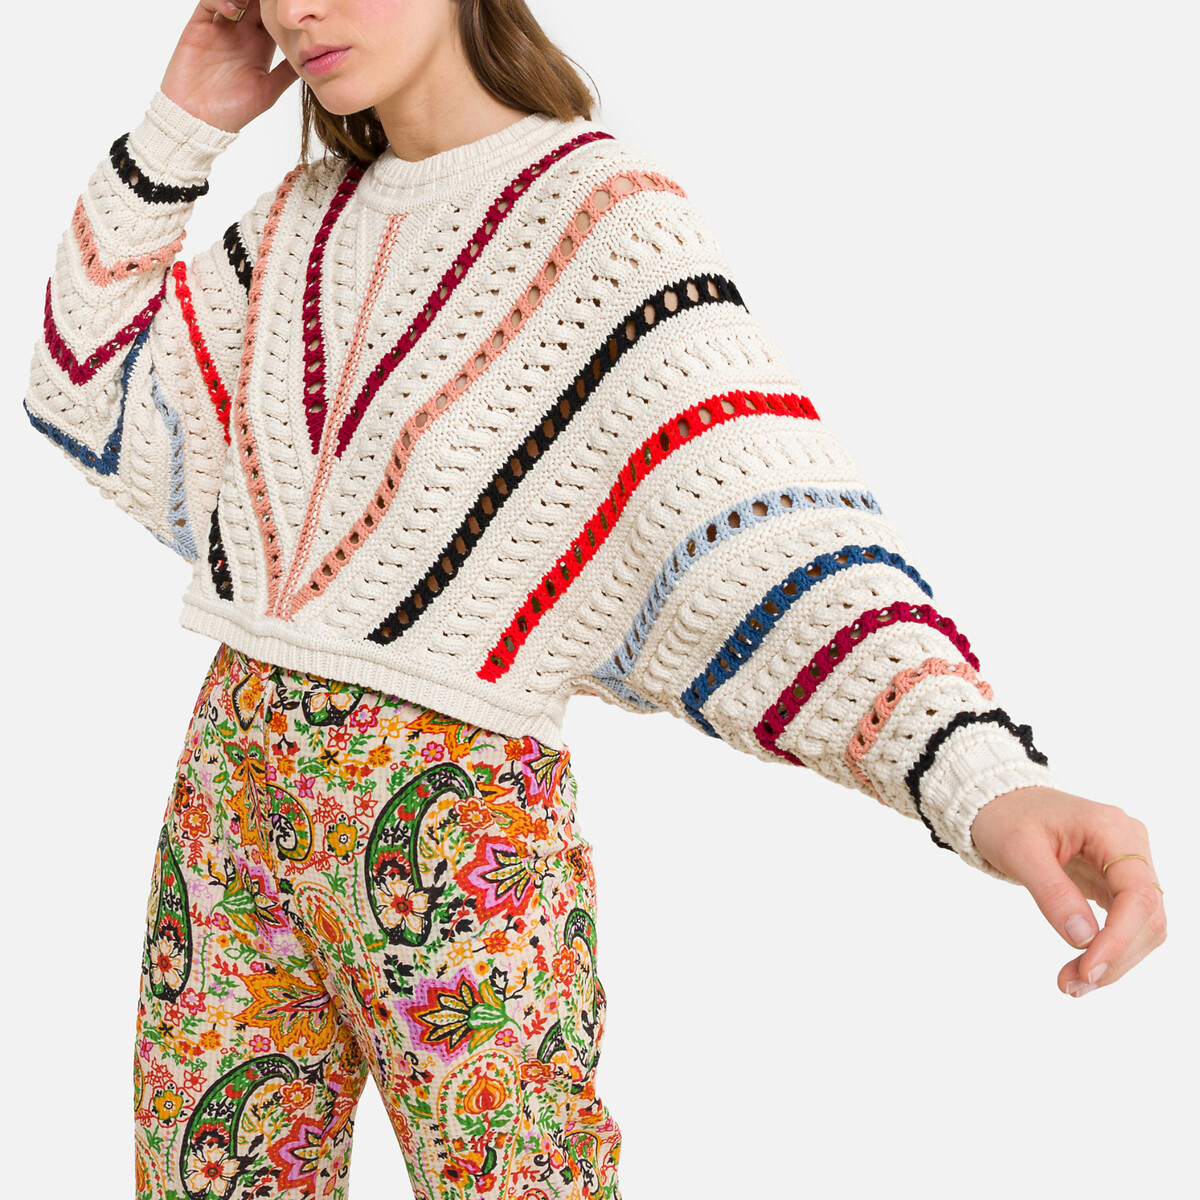 Пуловер BA&SH С V-образным вырезом из ажурного трикотажа GARDY 1(S) бежевый, размер 1(S)